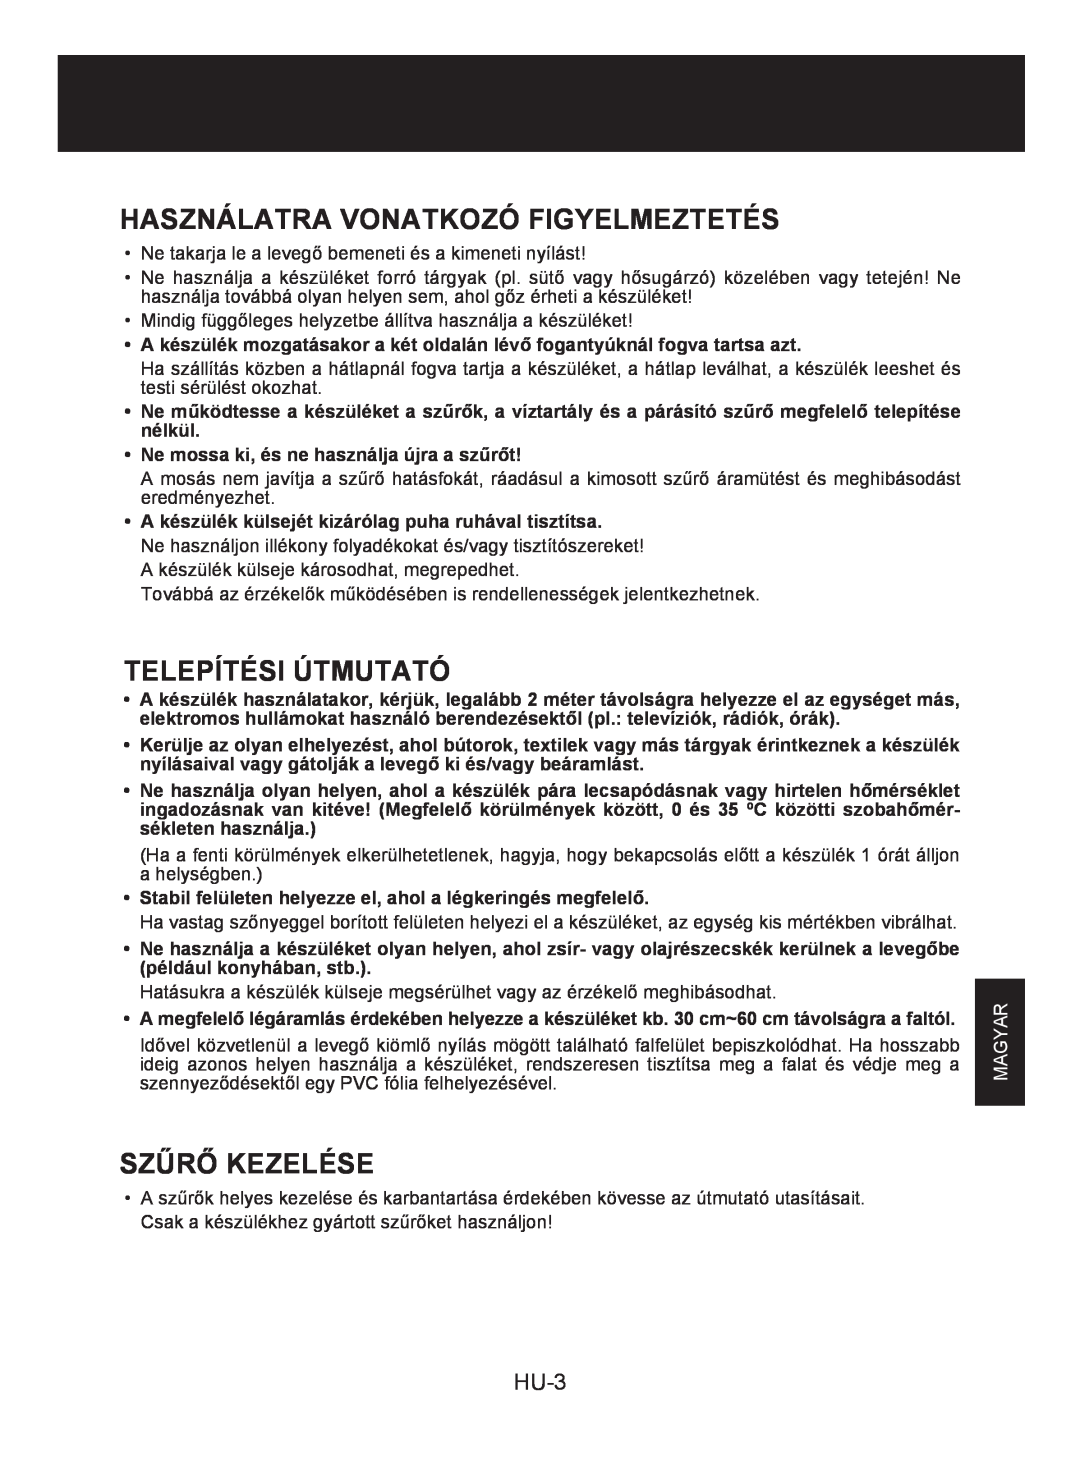 Sharp KC-930E operation manual Használatra Vonatkozó Figyelmeztetés, Telepítési Útmutató, Szűrő Kezelése, HU-3, Magyar 